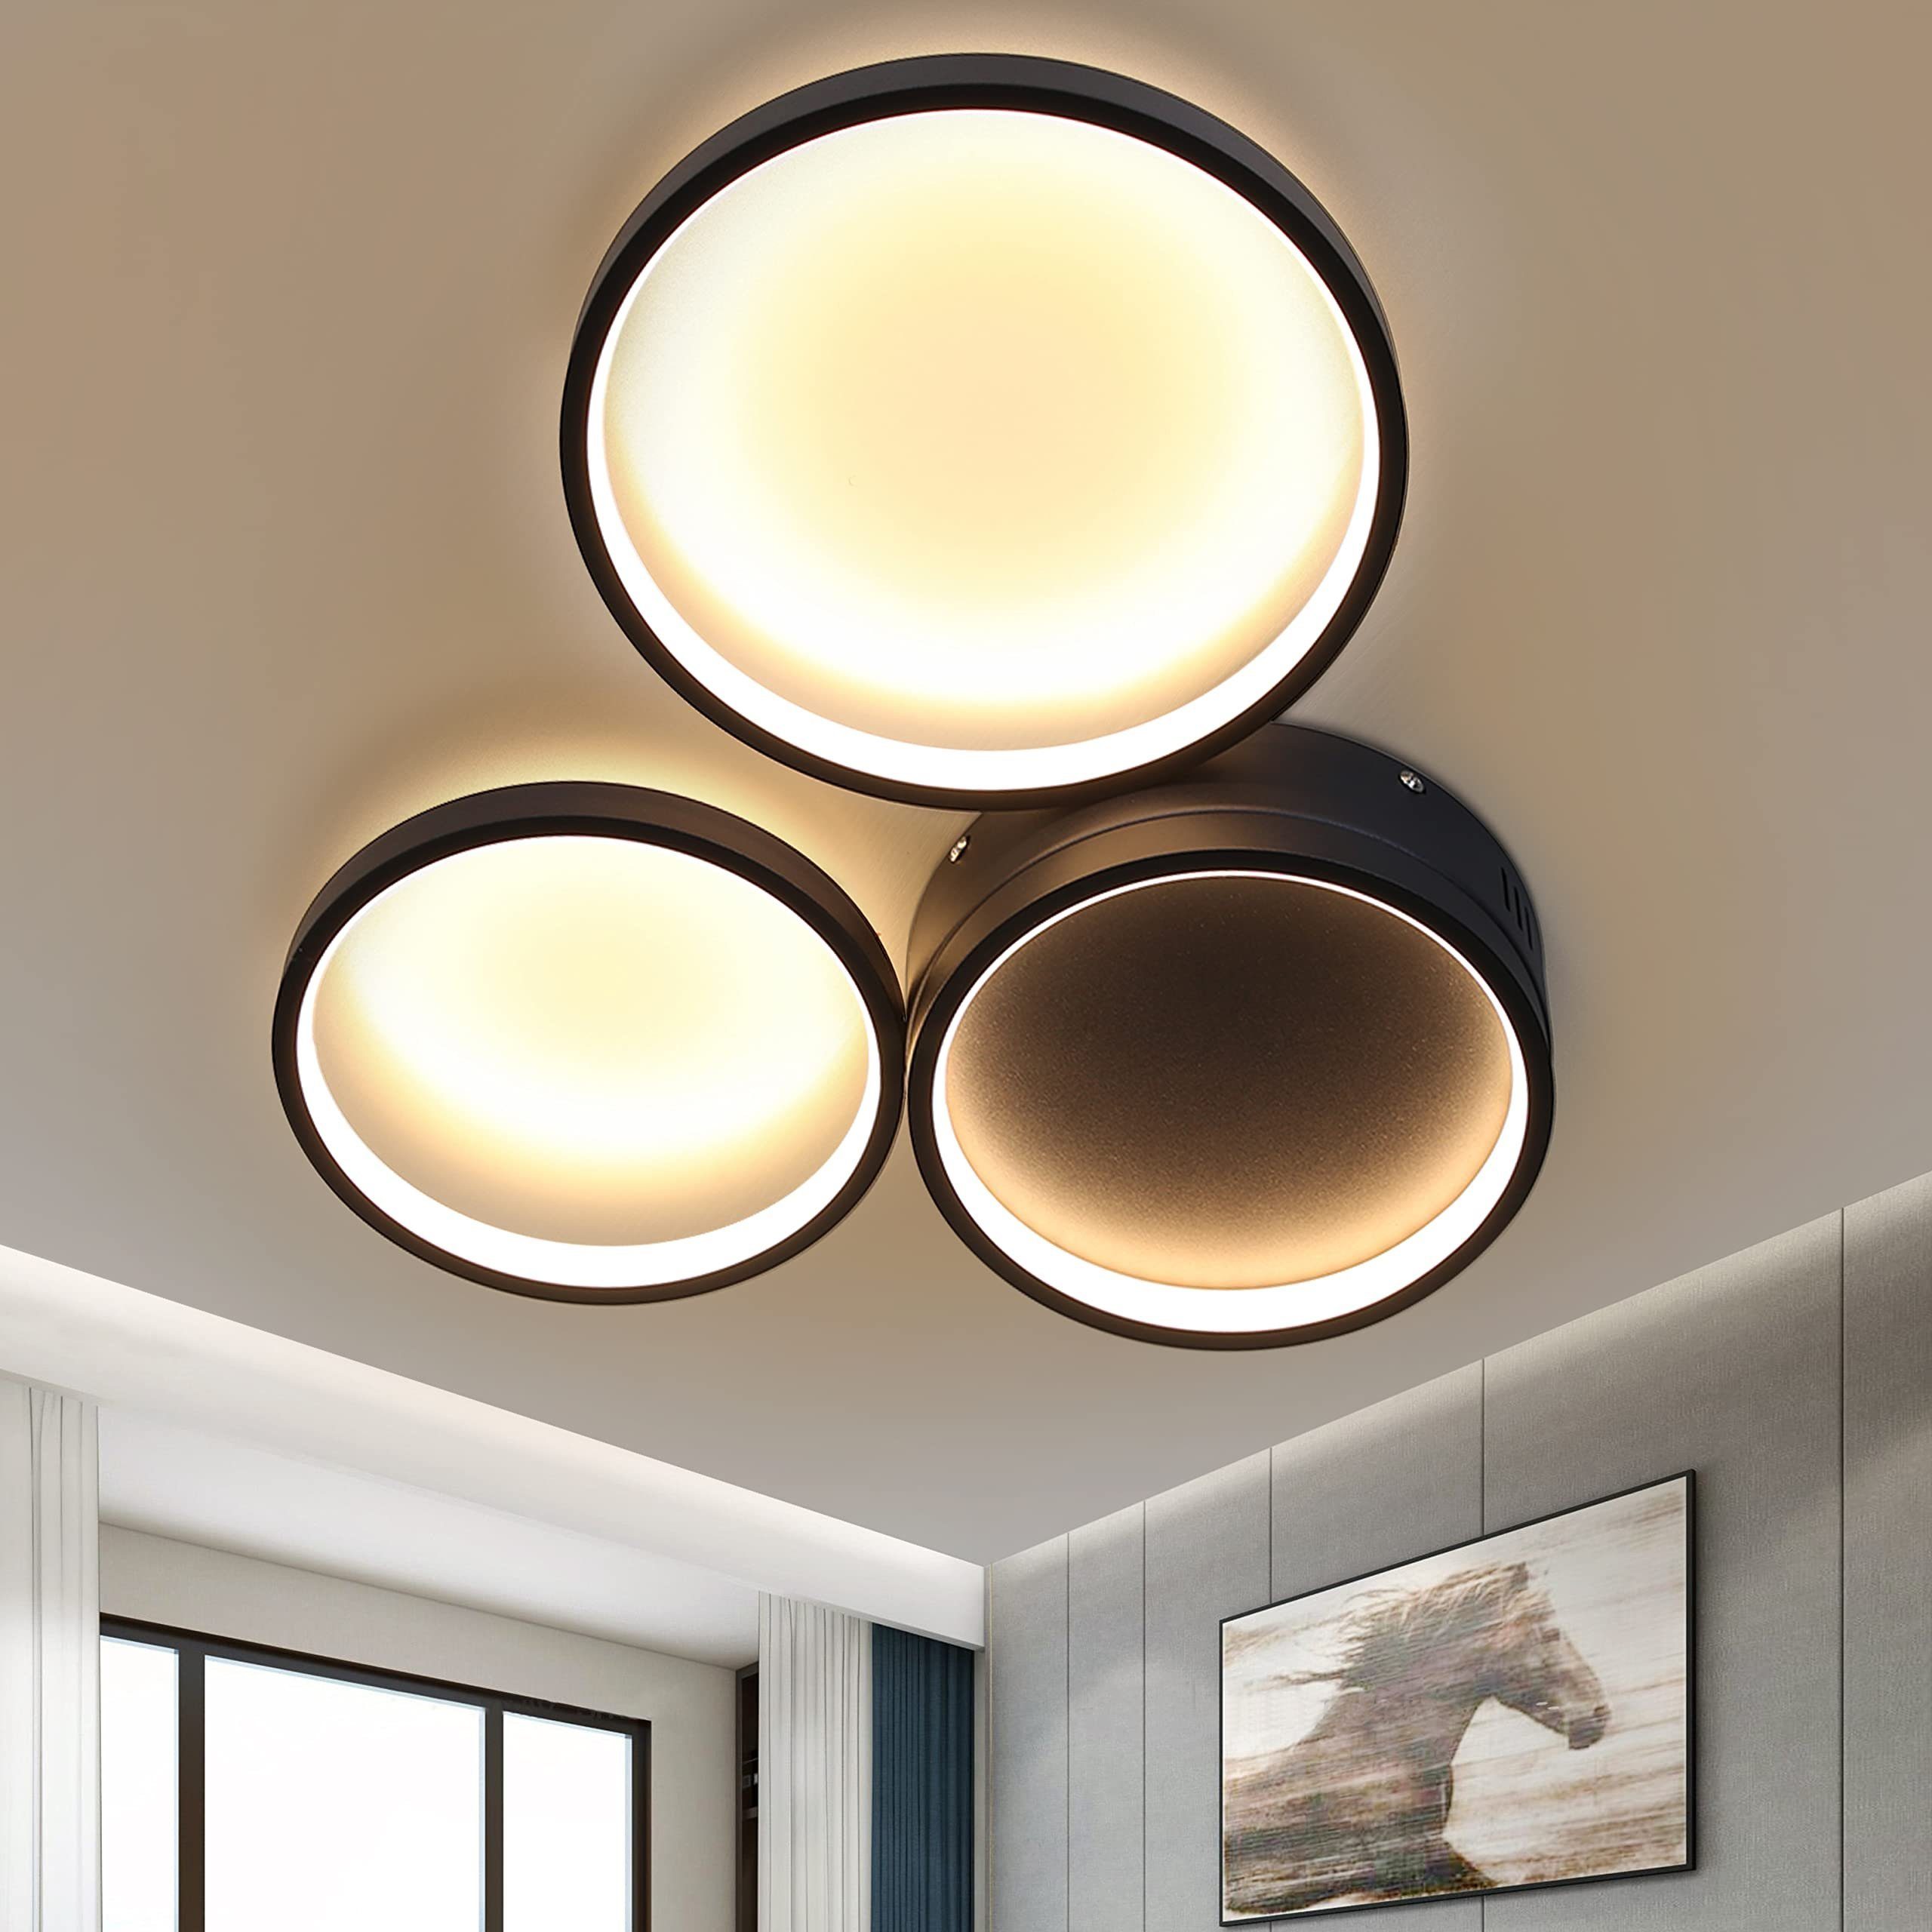 LED Design Decken Lampen Flur Dielen Wohn Schlaf Zimmer Beleuchtung 4-flammig 